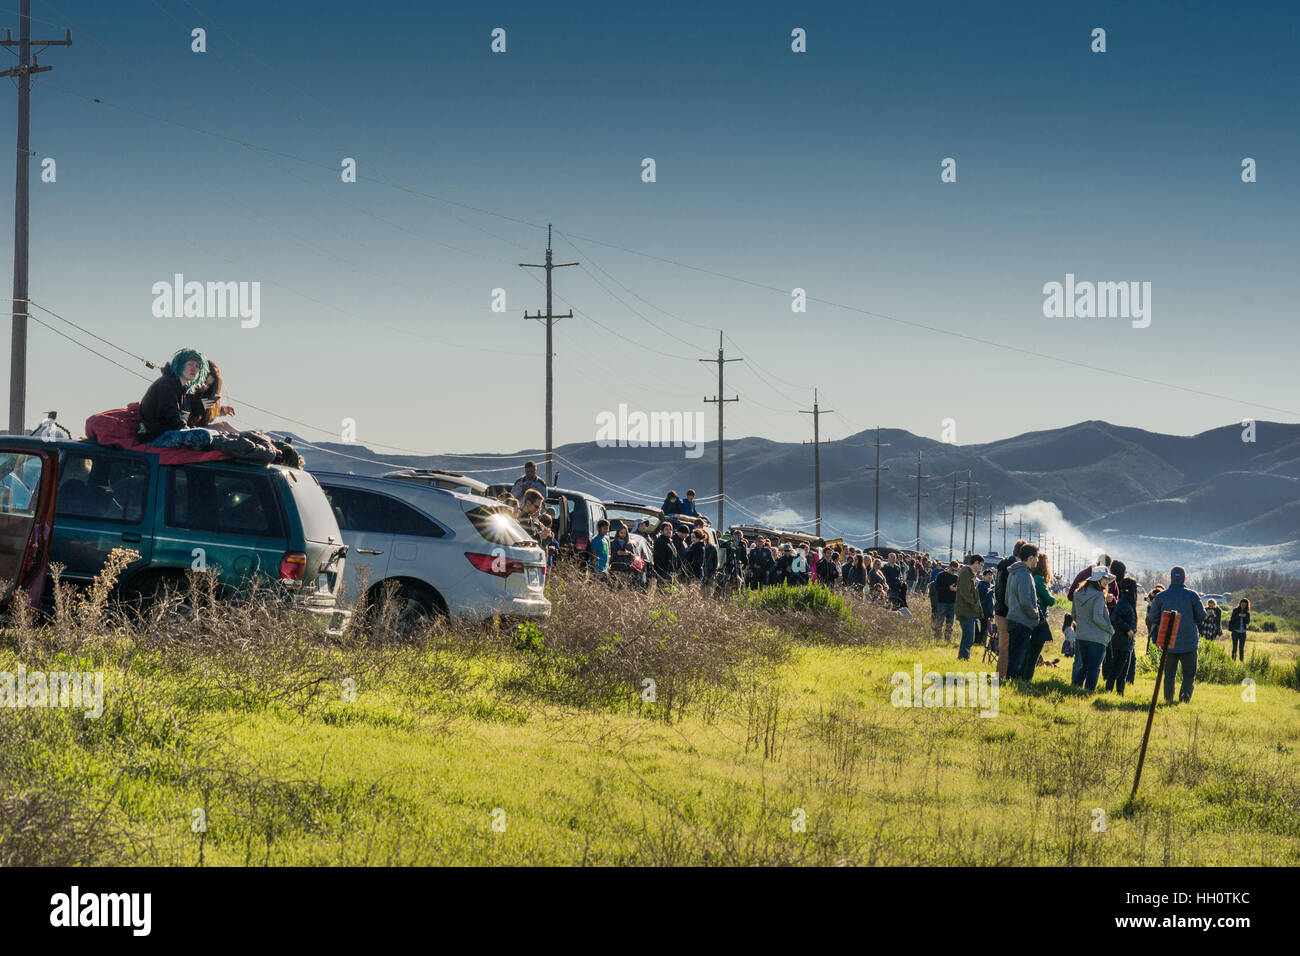 Linie des Autos und Menschen zu sehen, Spacex Rakete starten. Stockfoto